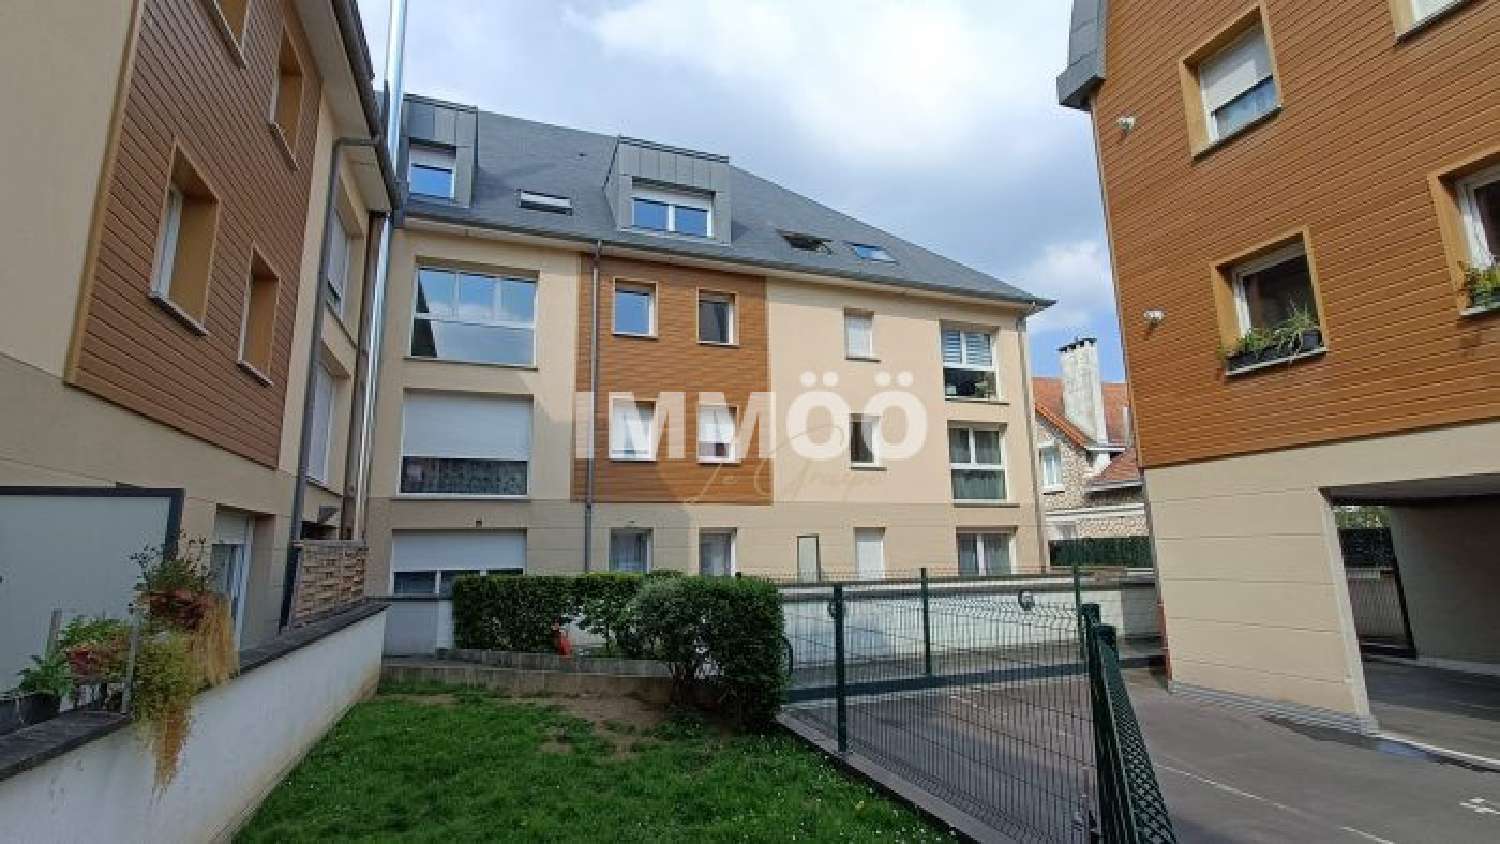 Rouen 76100 Seine-Maritime Wohnung/ Apartment Bild 6638720